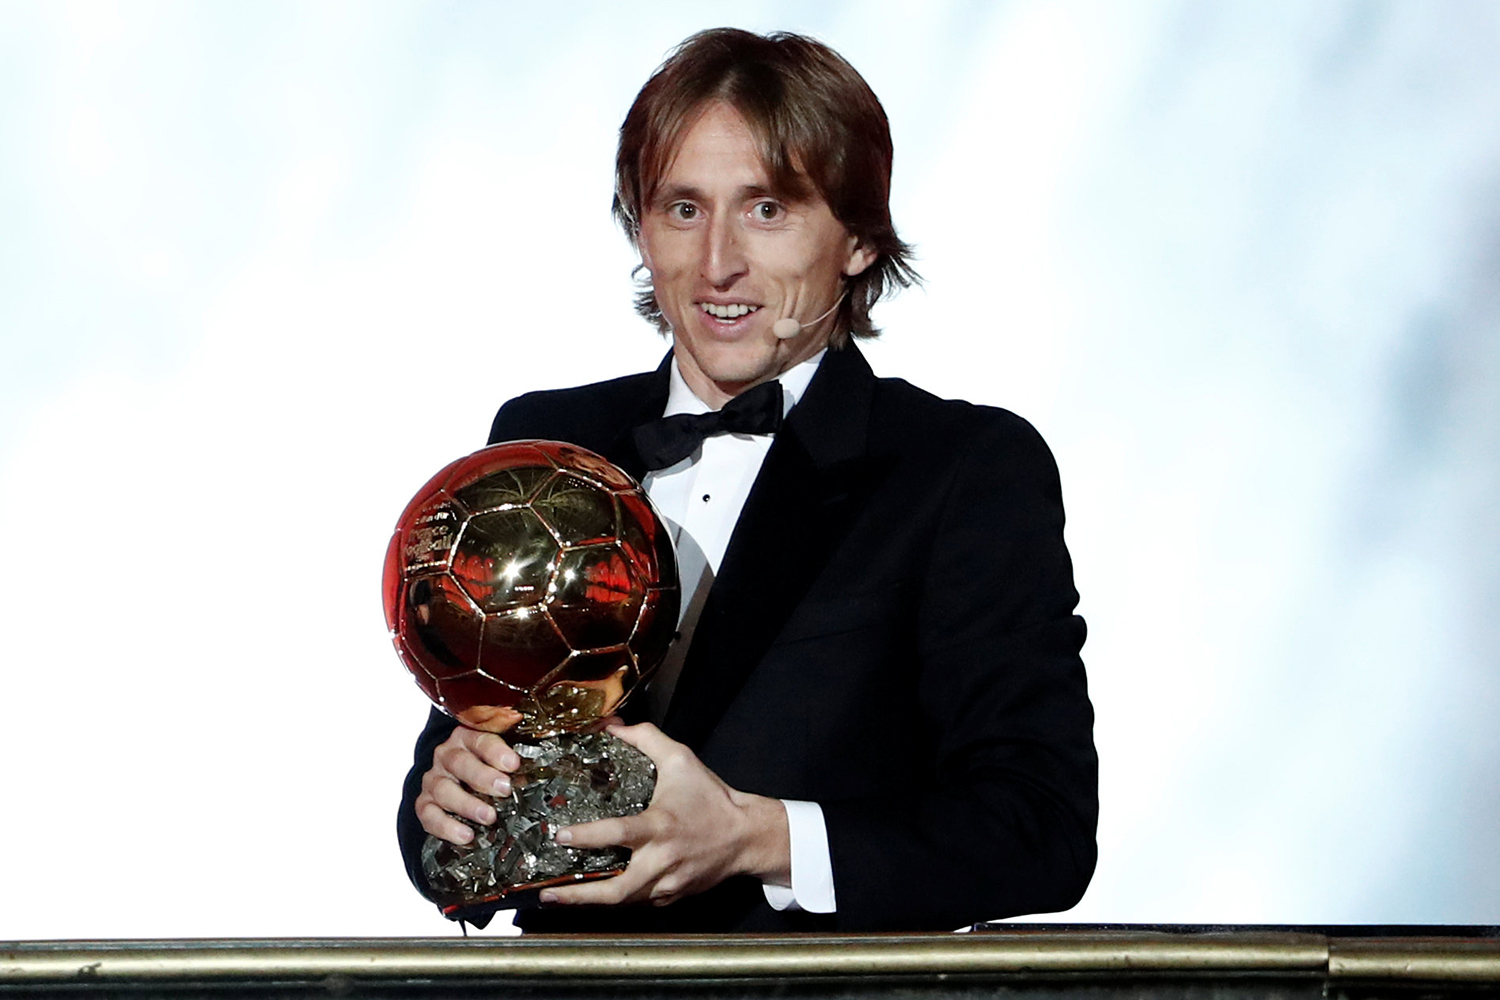 Bola de Ouro: Messi ganha prêmio de melhor do mundo pela 8ª vez - Placar -  O futebol sem barreiras para você